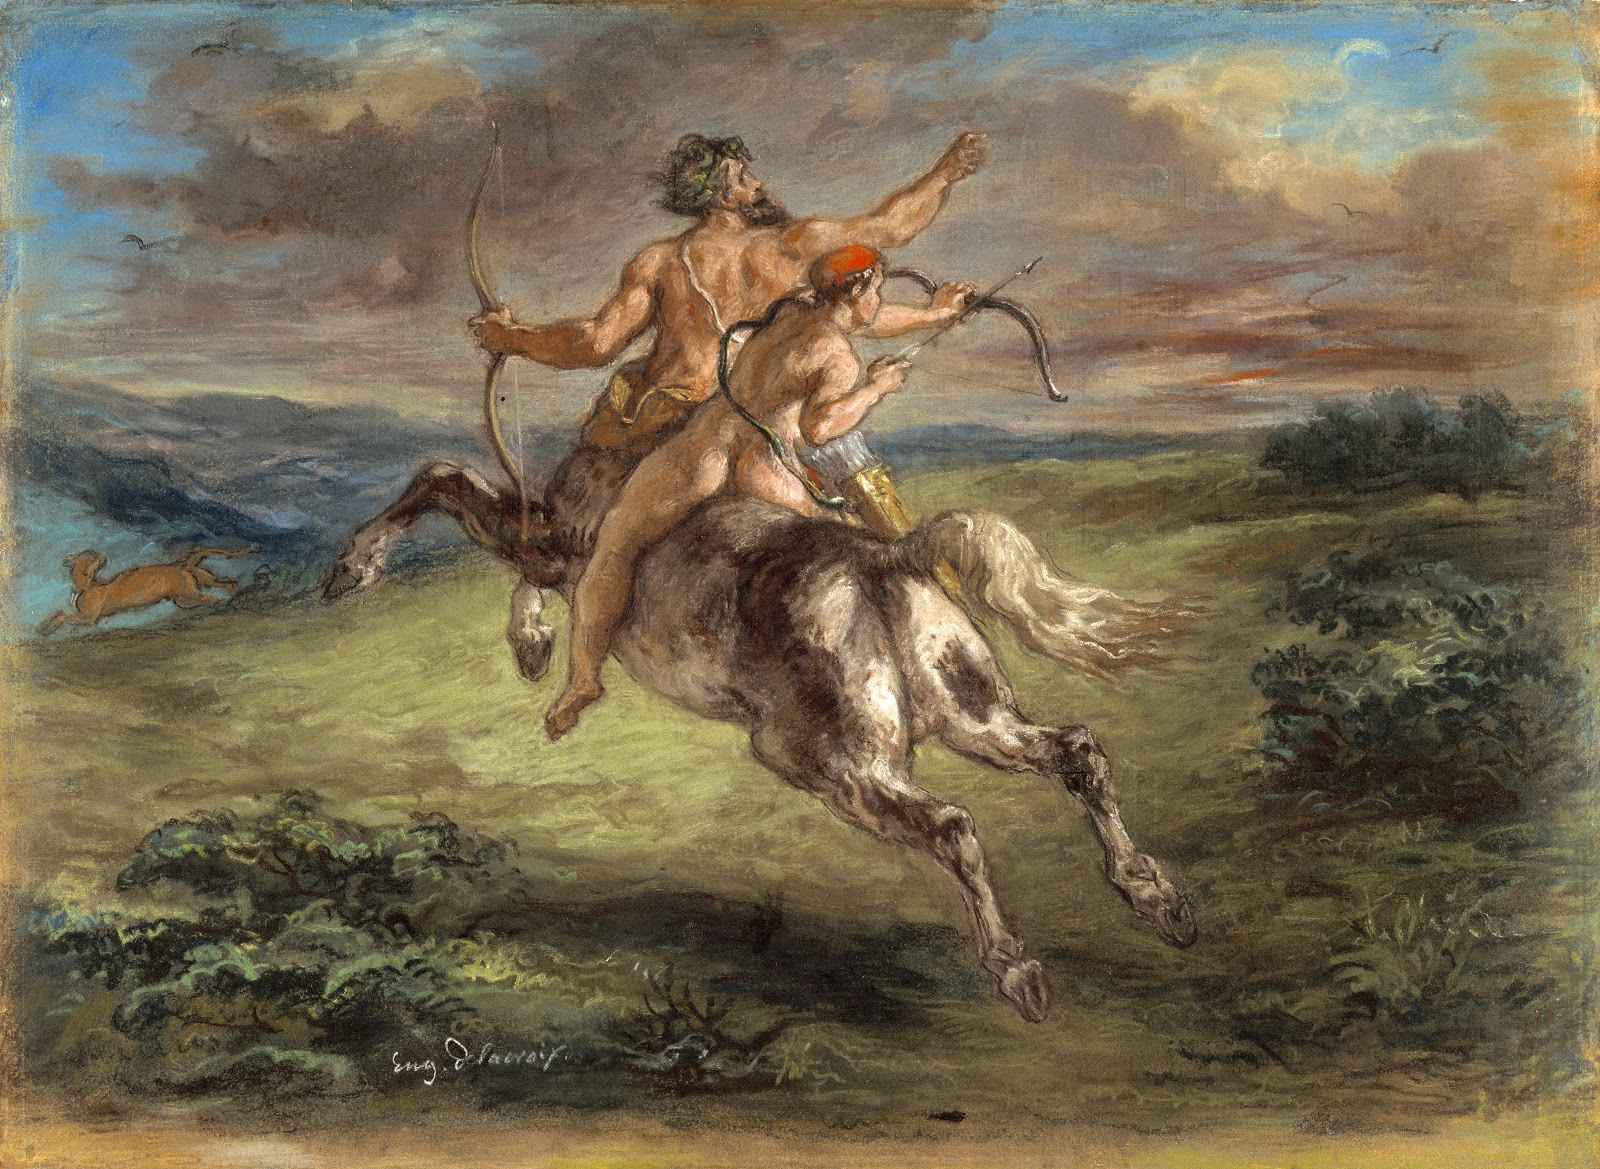 Eugene+Delacroix-1798-1863 (219).jpg